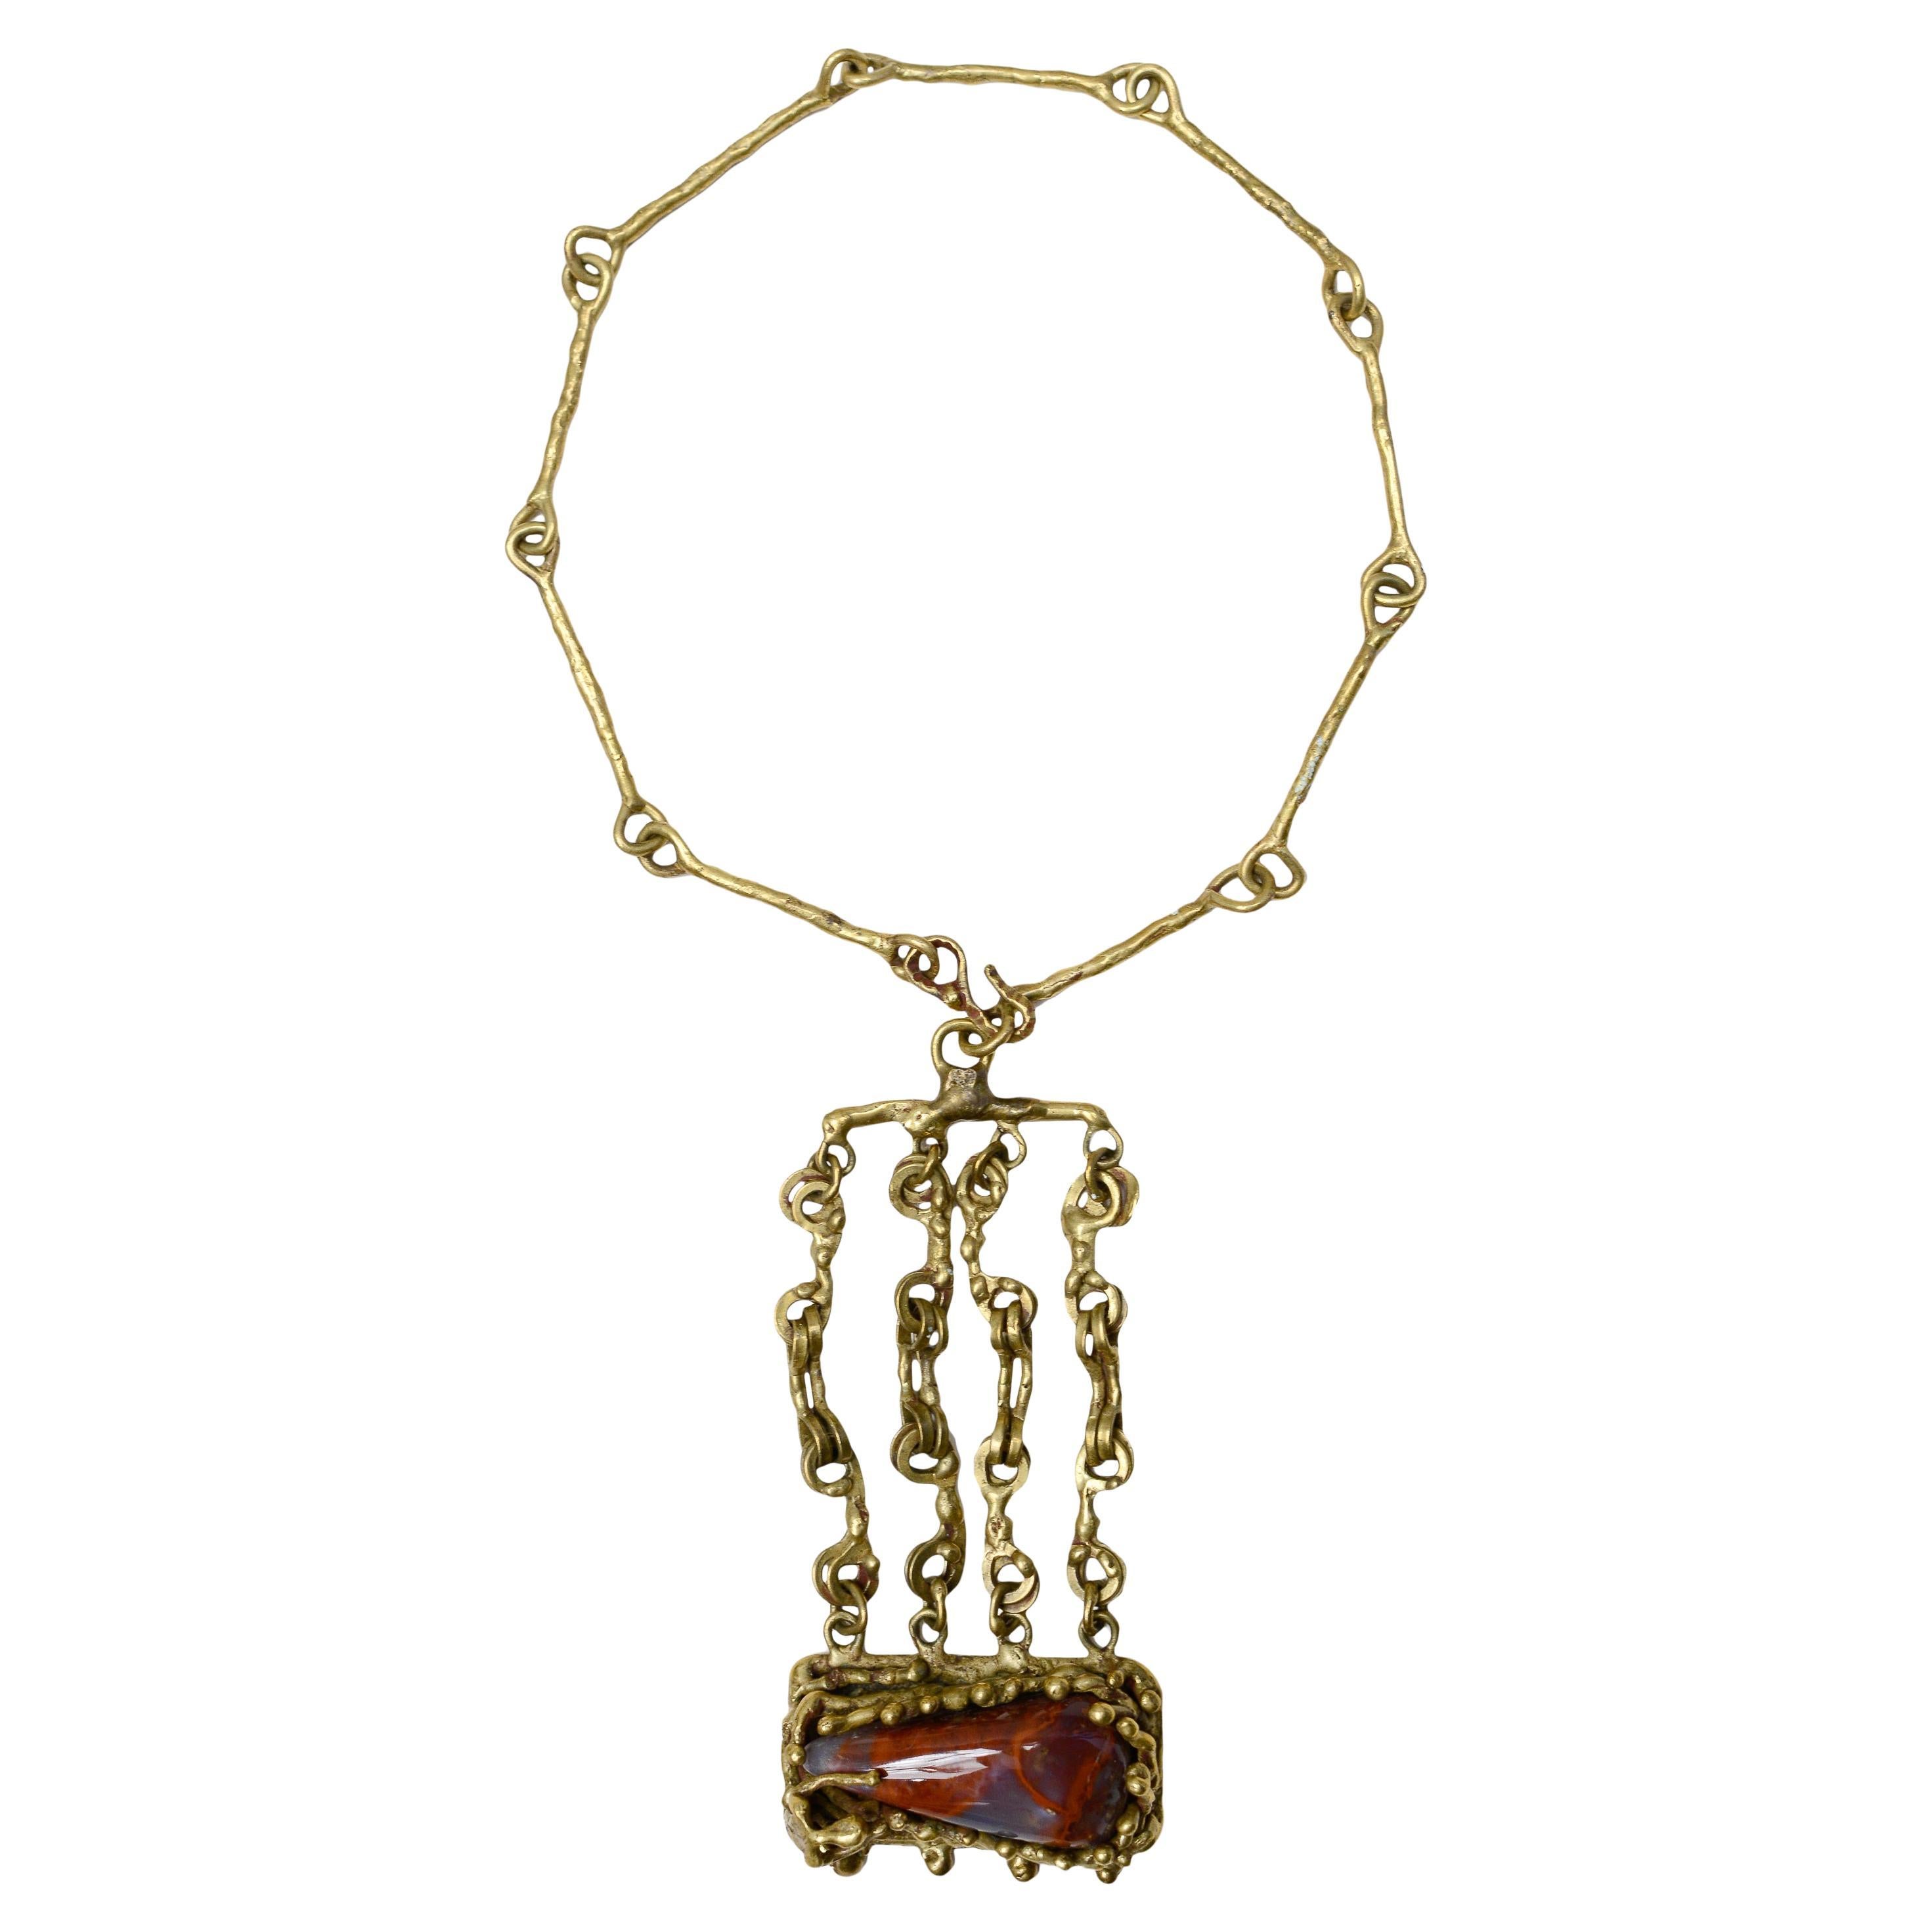 Pal Kepenyes Modernistische Halskette aus Bronze und Jaspis